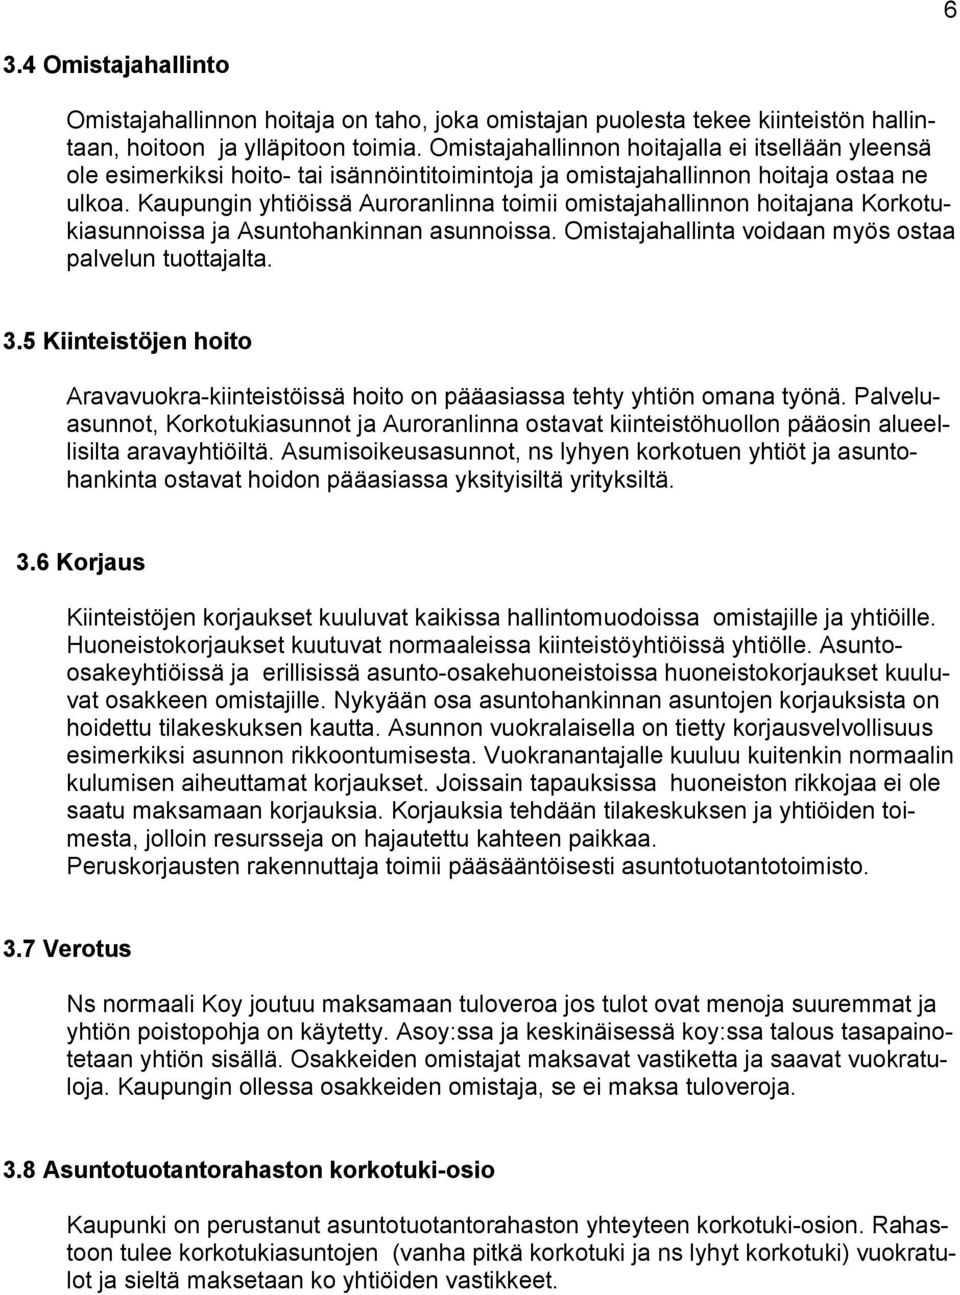 Kaupungin htiöissä Auroranlinna toimii omistahallinnon hoitana Korkotukiasunnoissa Asuntohankinnan asunnoissa. Omistahallinta voidaan mös ostaa palvelun tuottalta. 3.